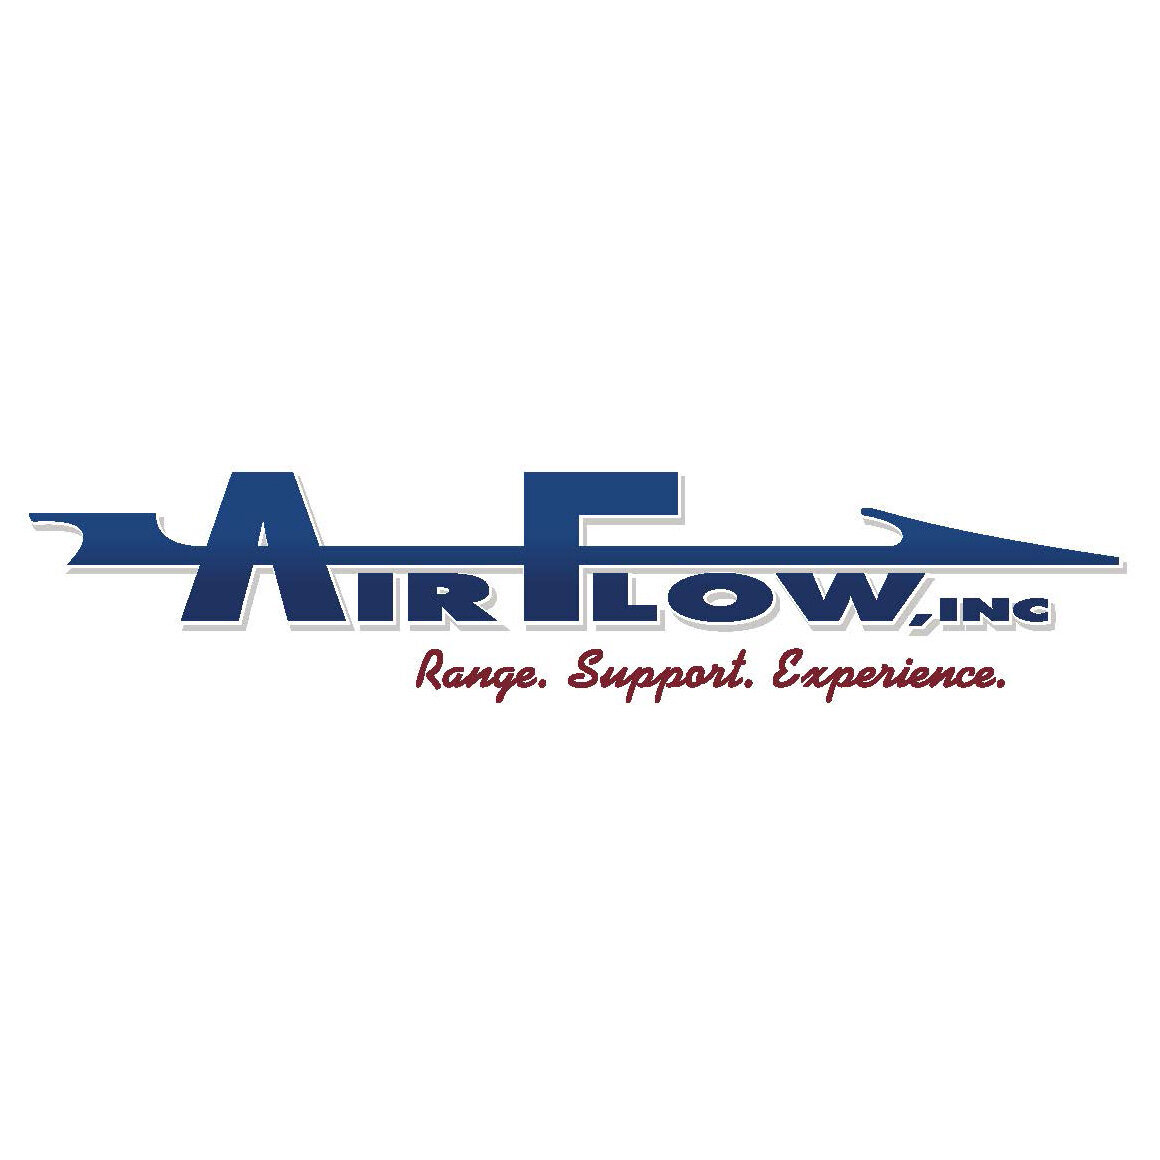 AirflowLogoRGBa